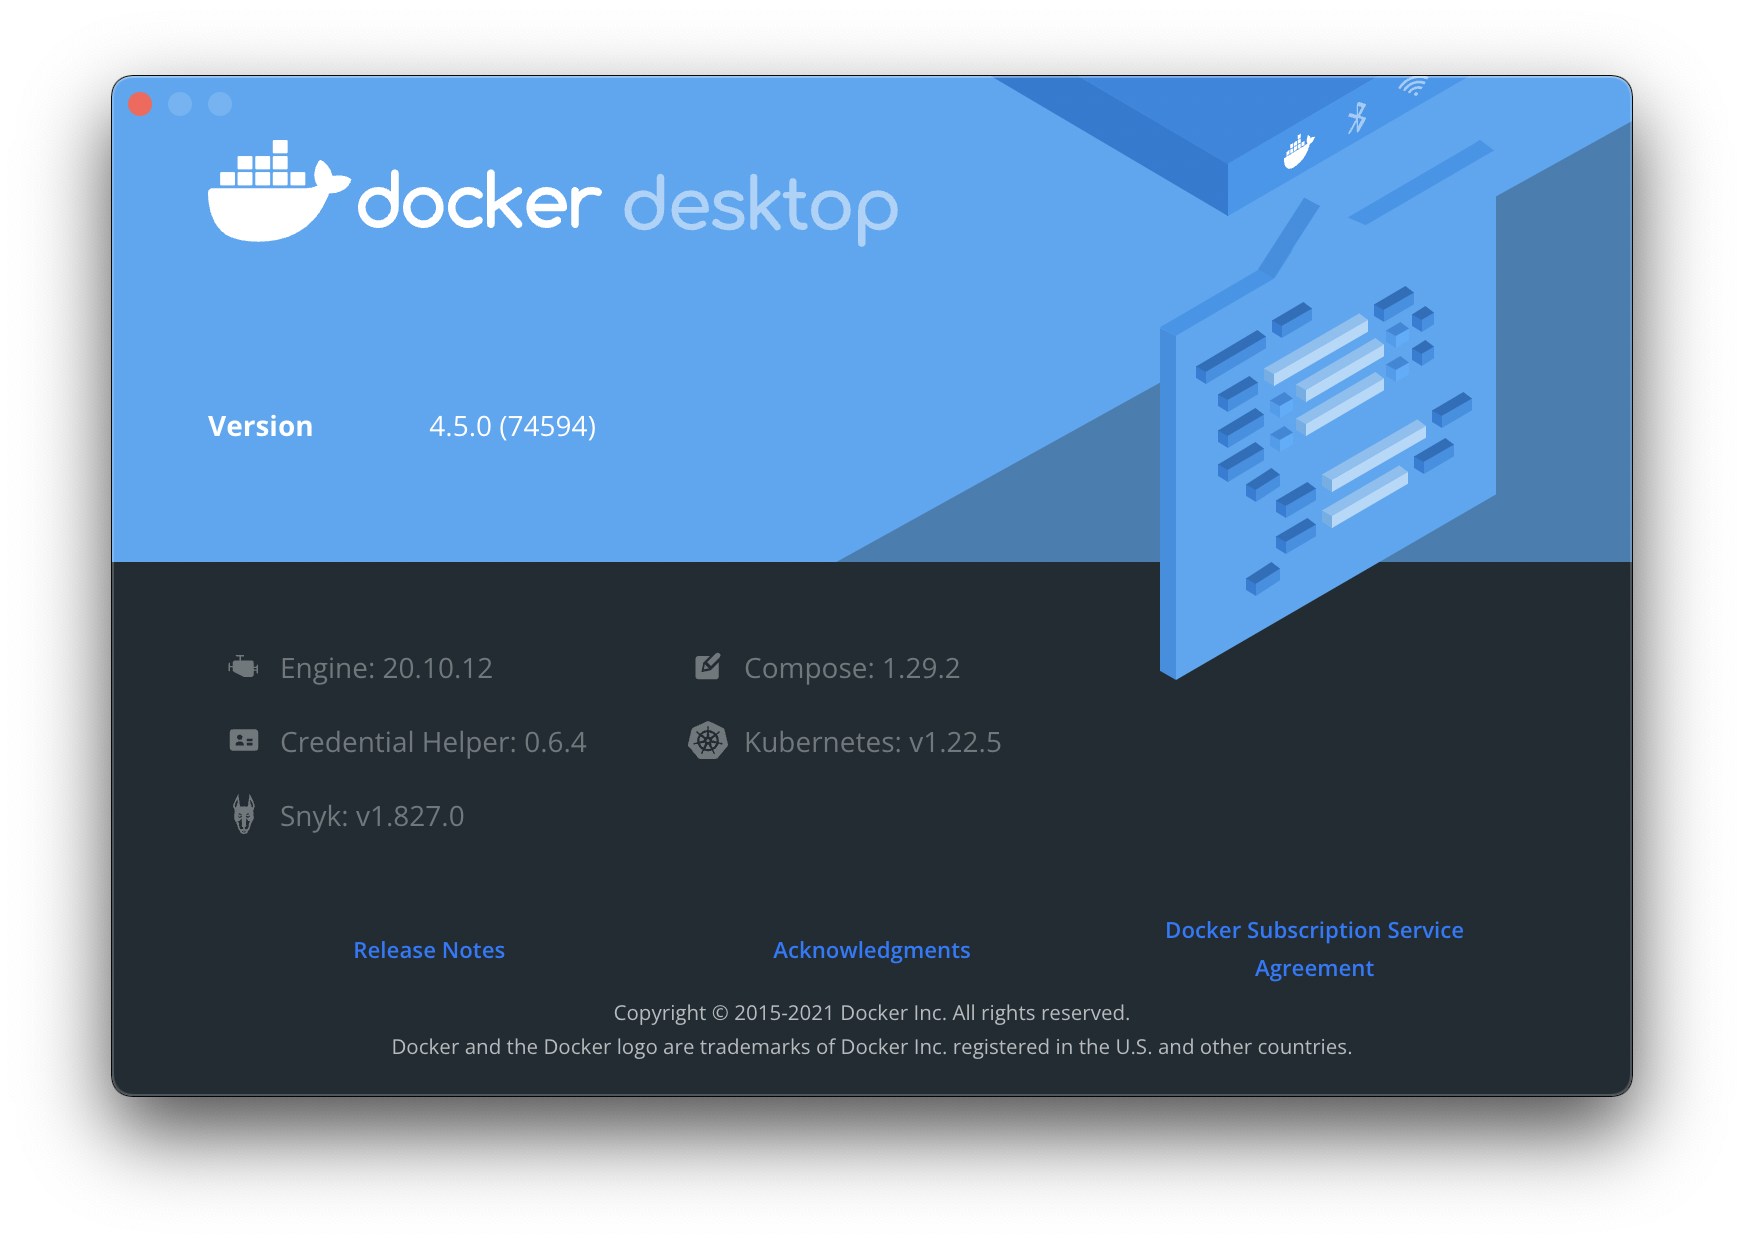 Docker desktop version details